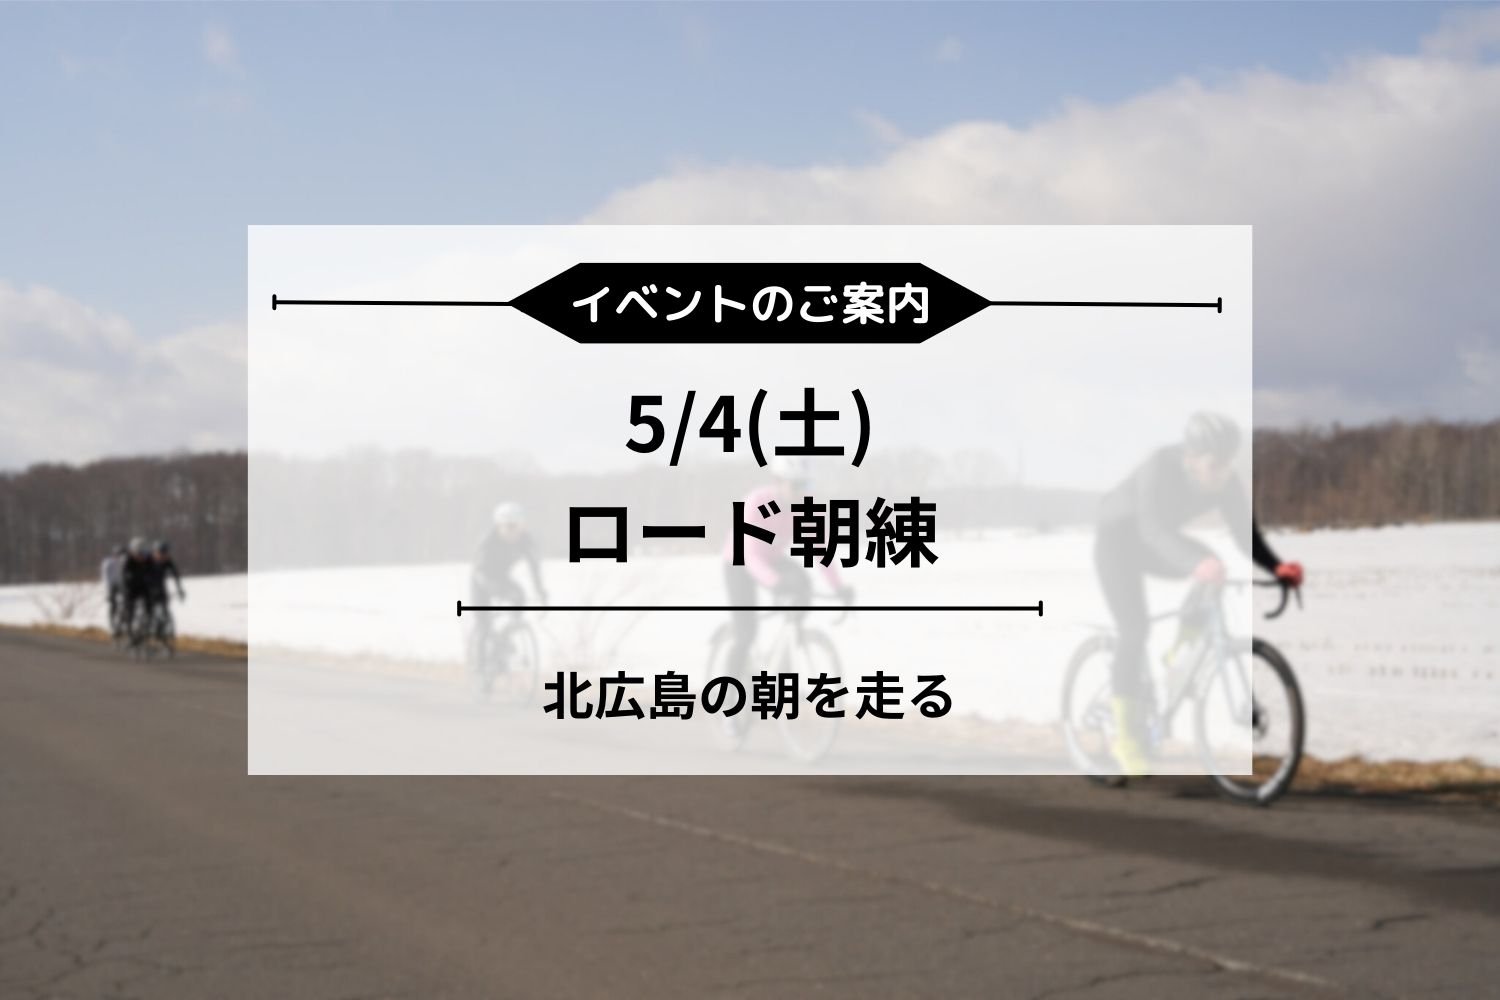 5/4(土) 朝練ロードライド開催